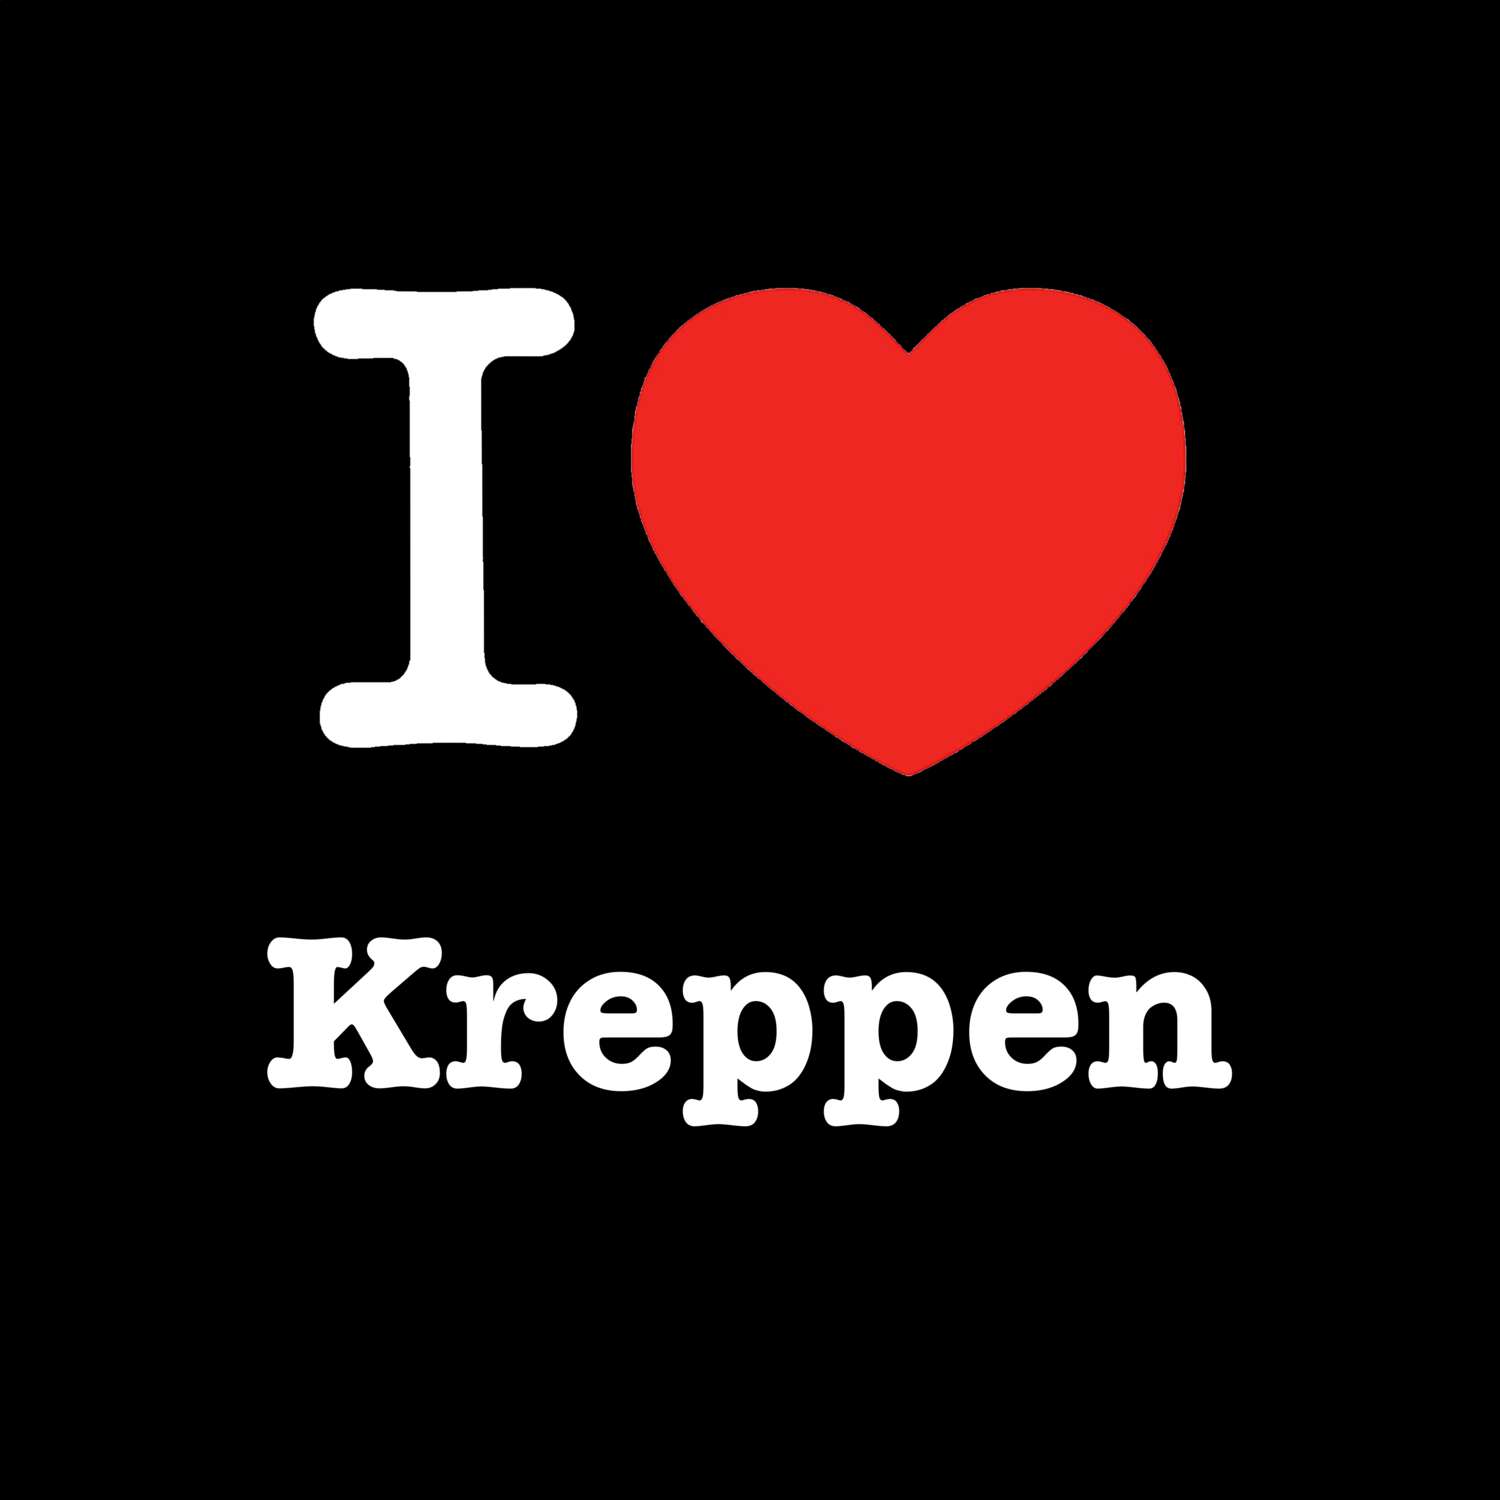 Kreppen T-Shirt »I love«